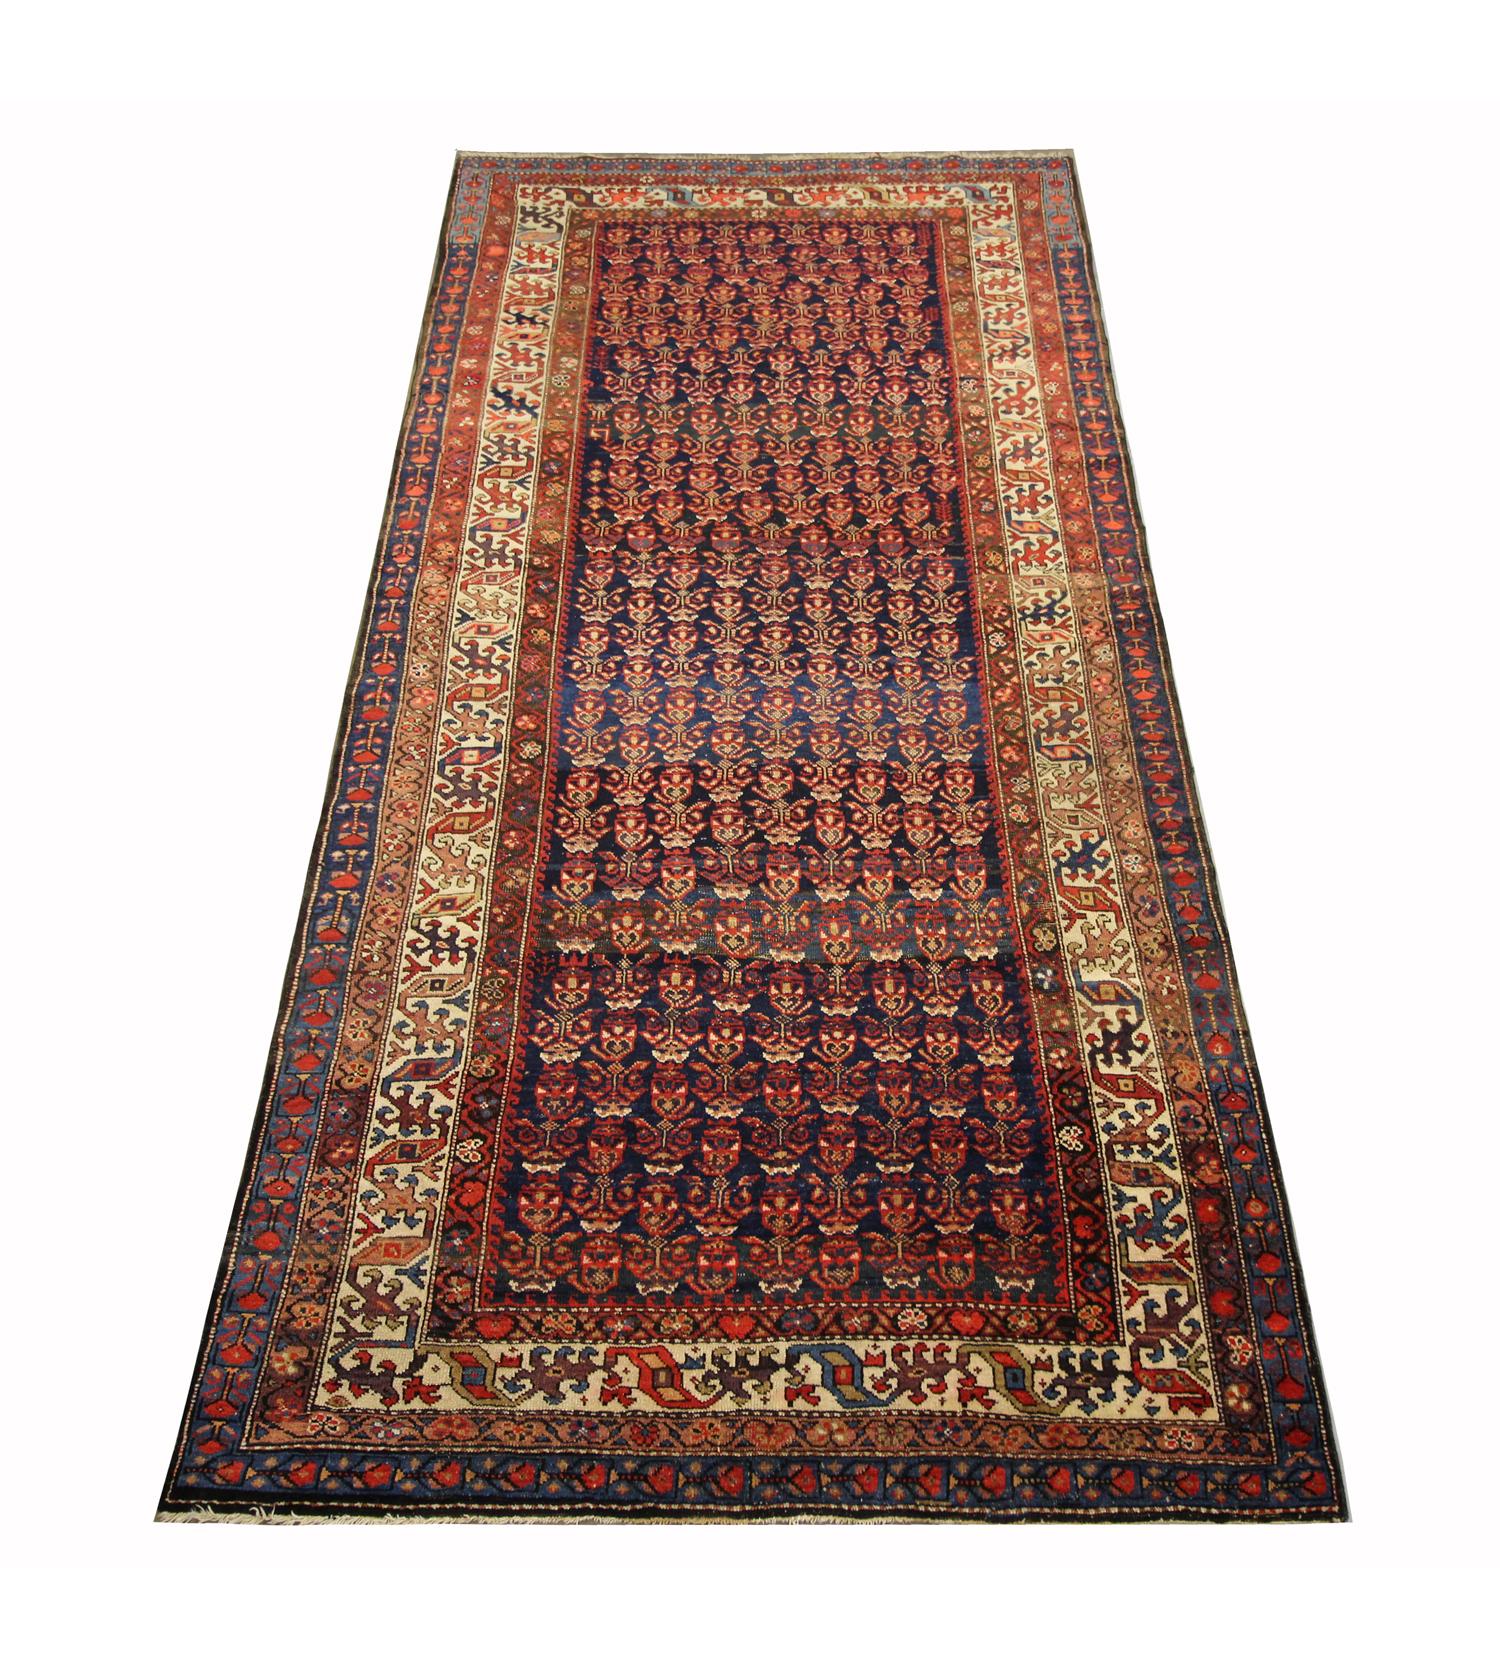 Ce tapis en laine fine a été tissé à la main en Azerbaïdjan en 1880. Le dessin central présente un motif audacieux et complexe tissé avec un motif répétitif sur toute la surface du centre et un motif répétitif traditionnel en couches sur la bordure.